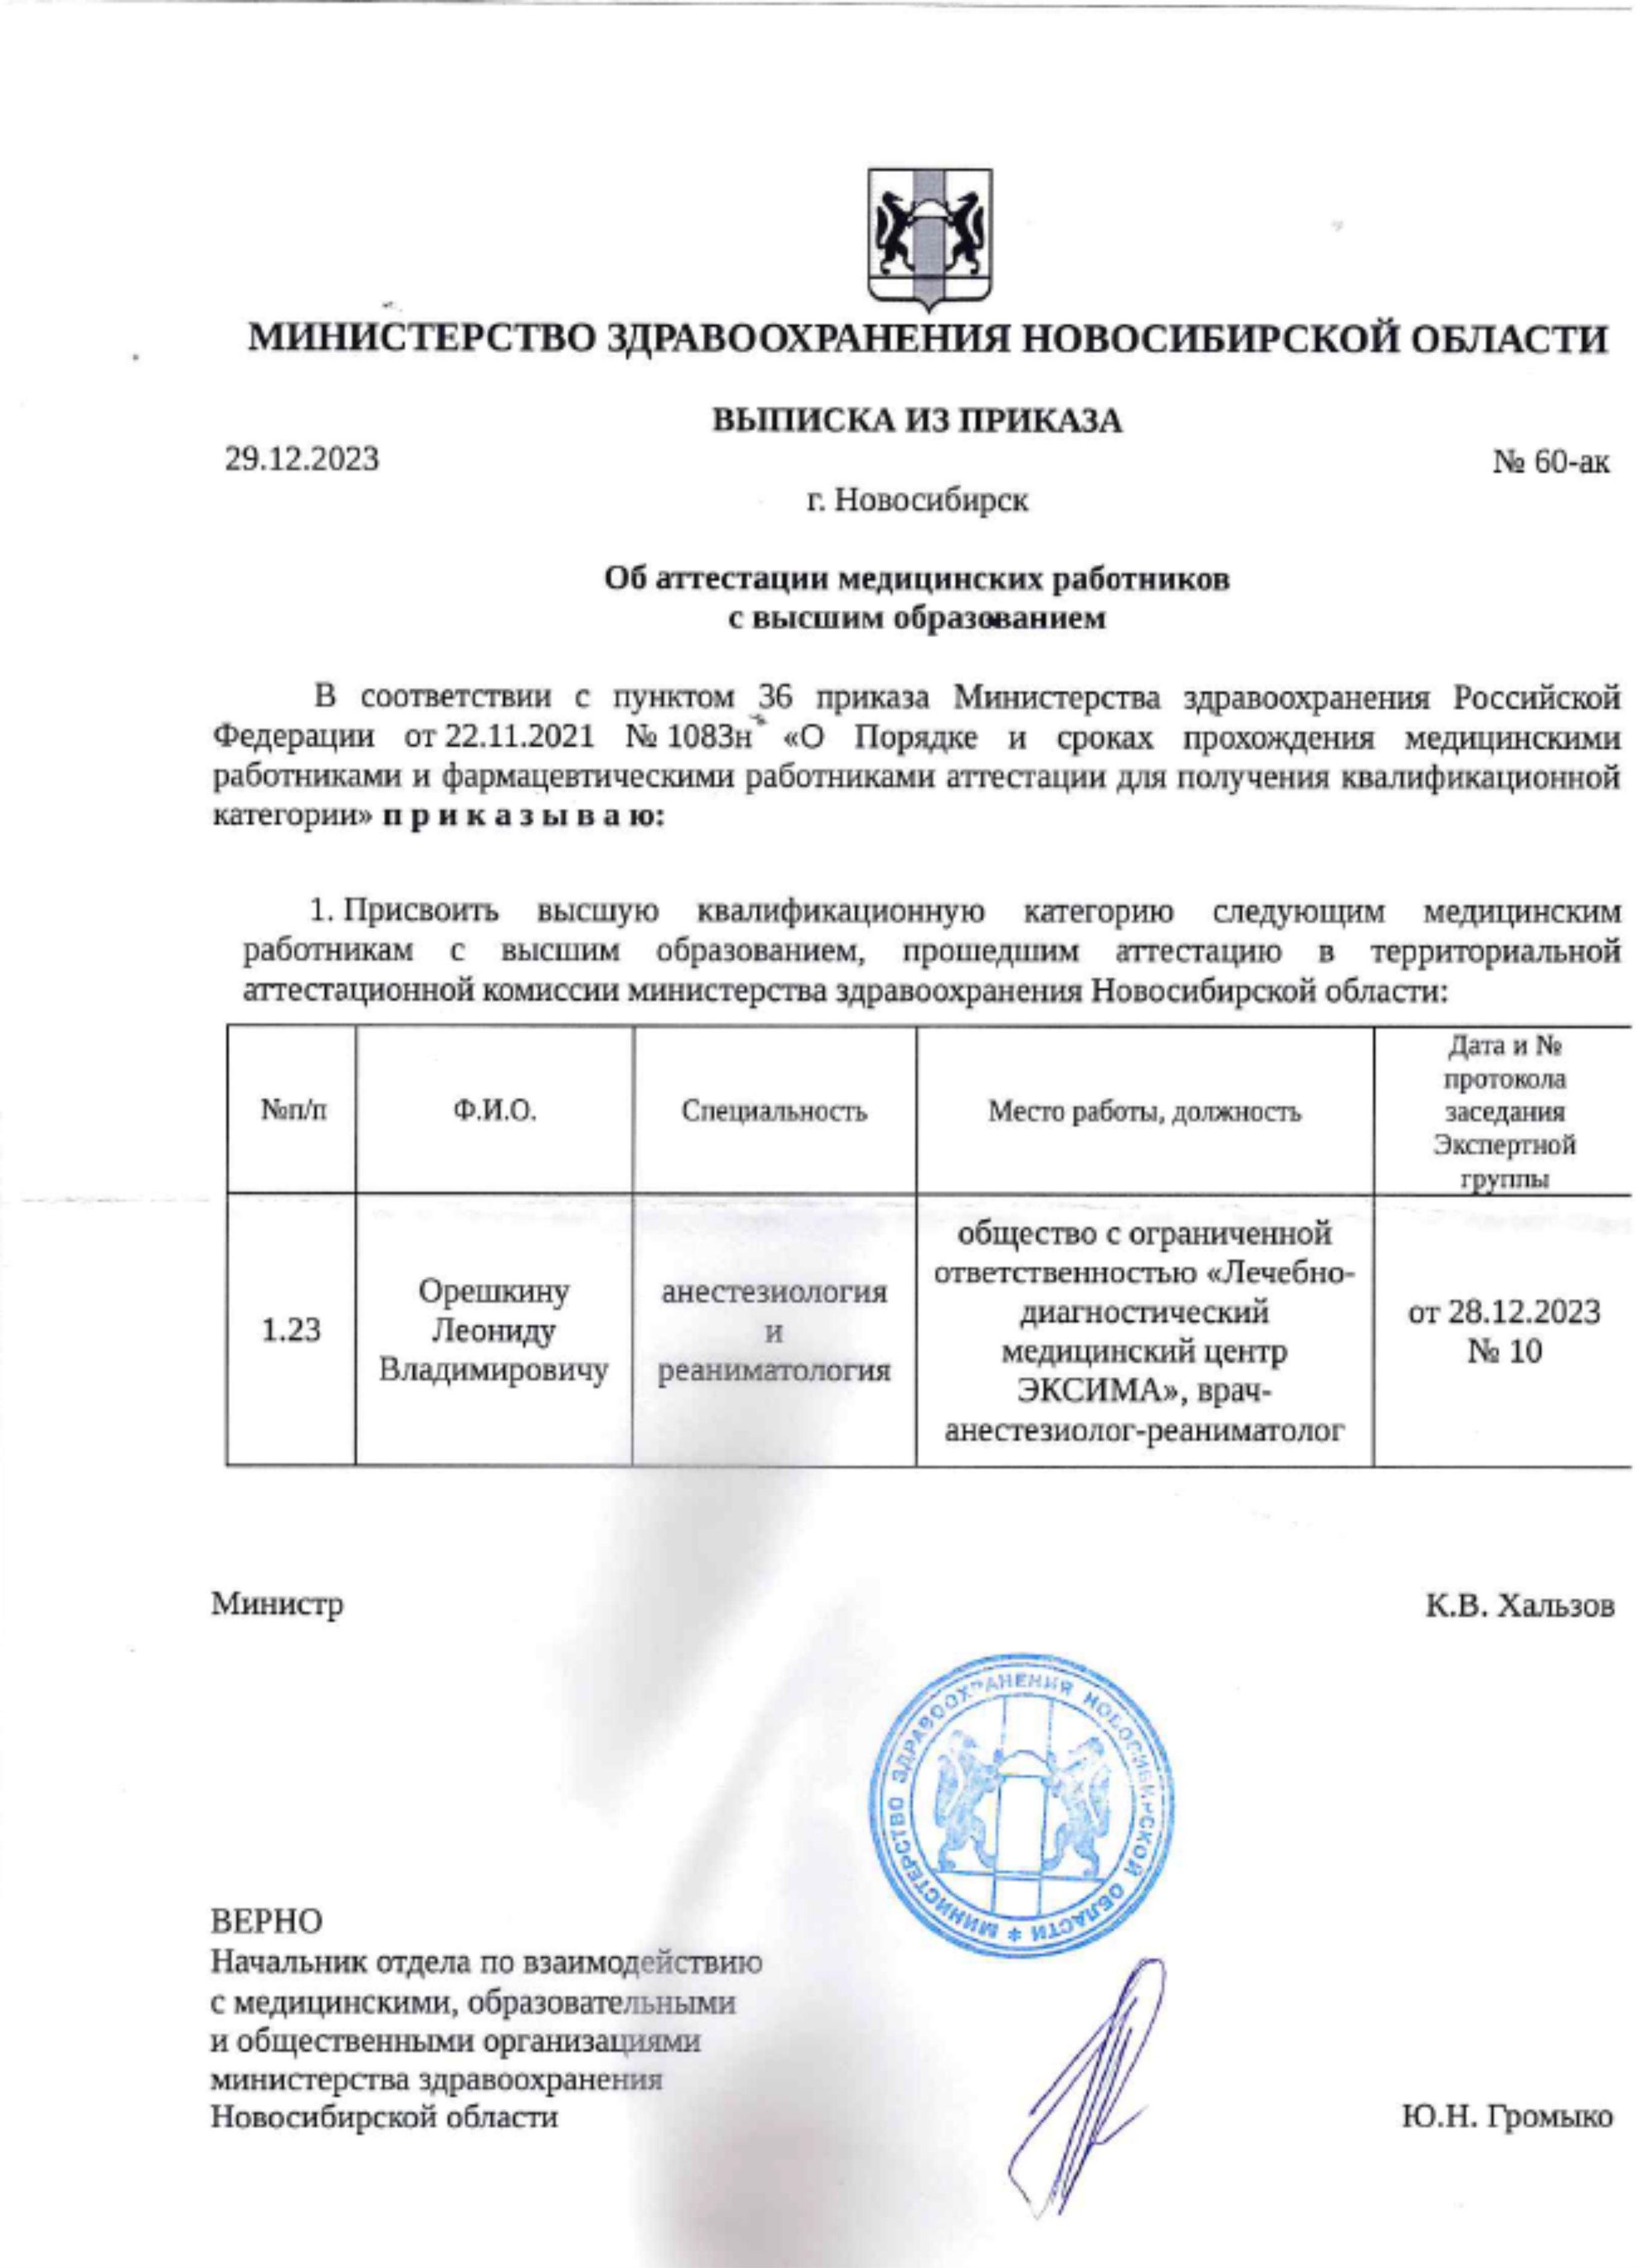 Выписка о присвоении высшей квалификационной категории. 2023 г.